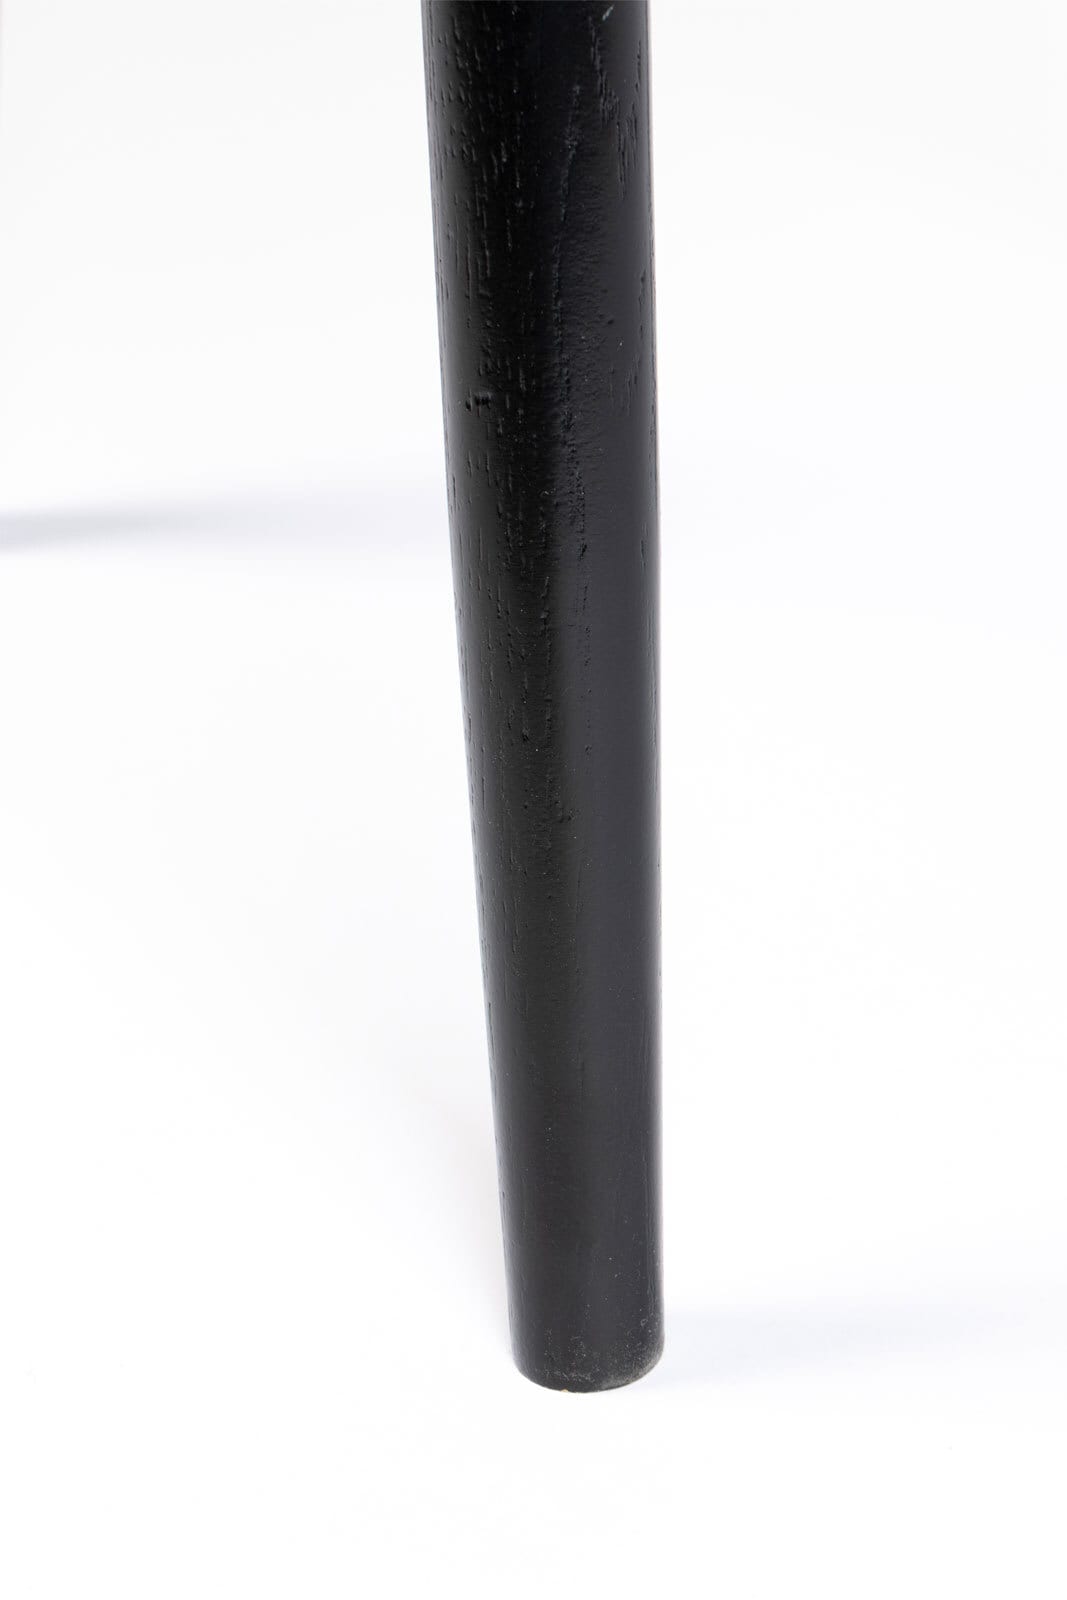 Couchtisch rund FABIO 80 cm Eiche schwarz